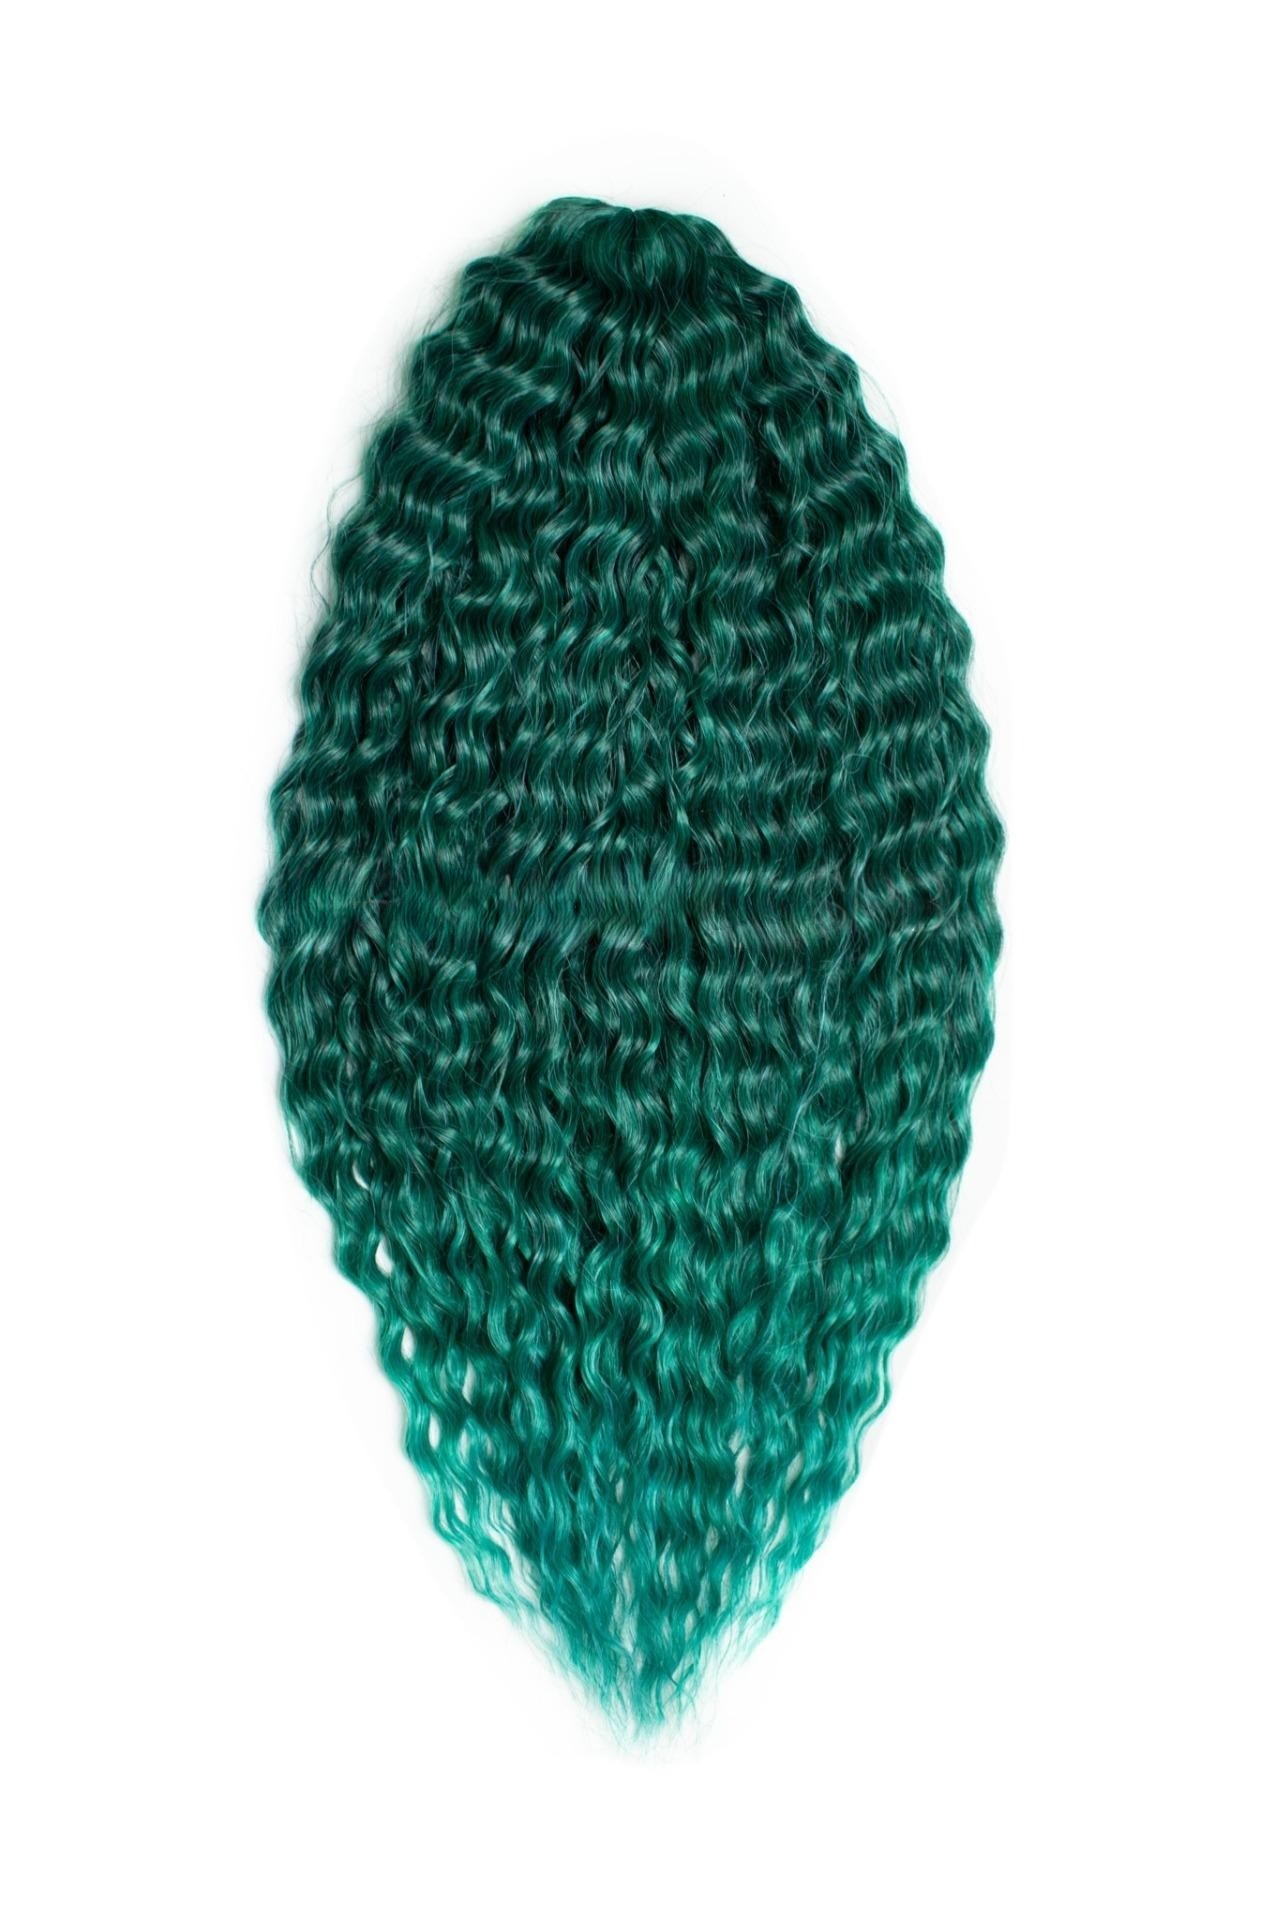 Афрокудри для плетения волос Ariel Ариэль цвет EMERALD зеленый длина 66см вес 300г афрокудри для плетения волос ariel ариэль 1b red красный 60см 300г